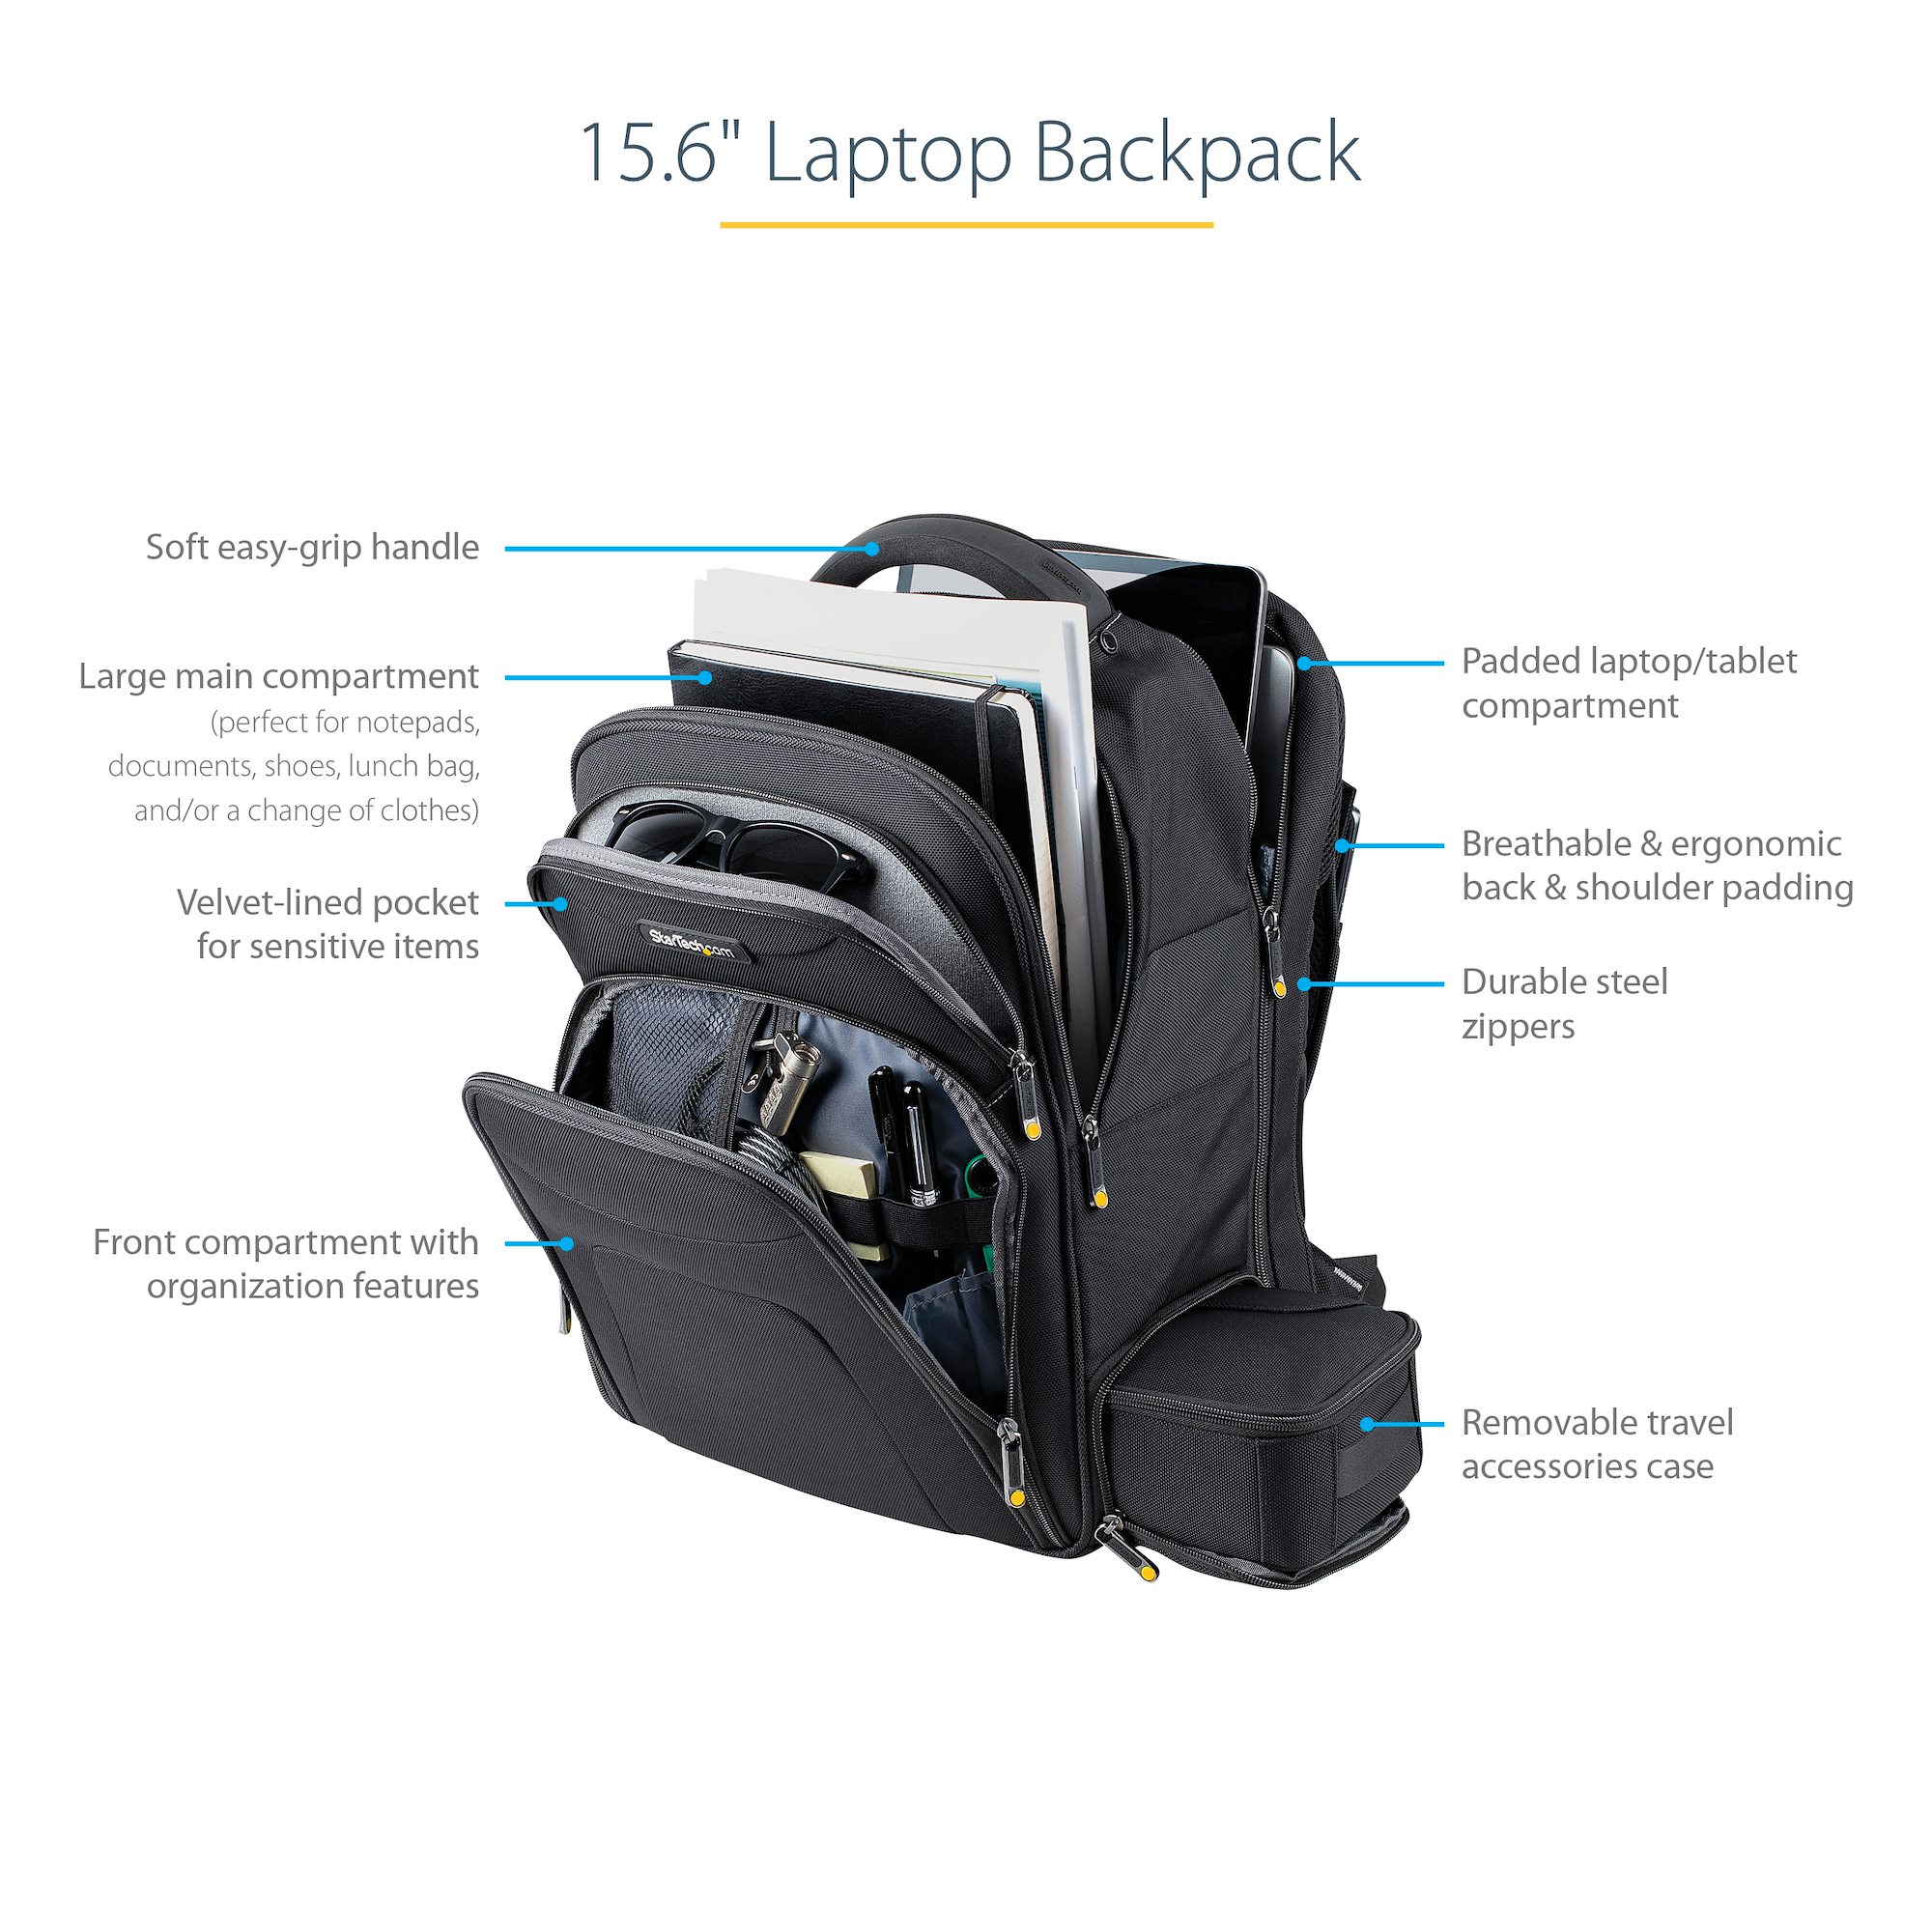 Samsonite ballistic nylon hard shell laptop backpack black - www ...